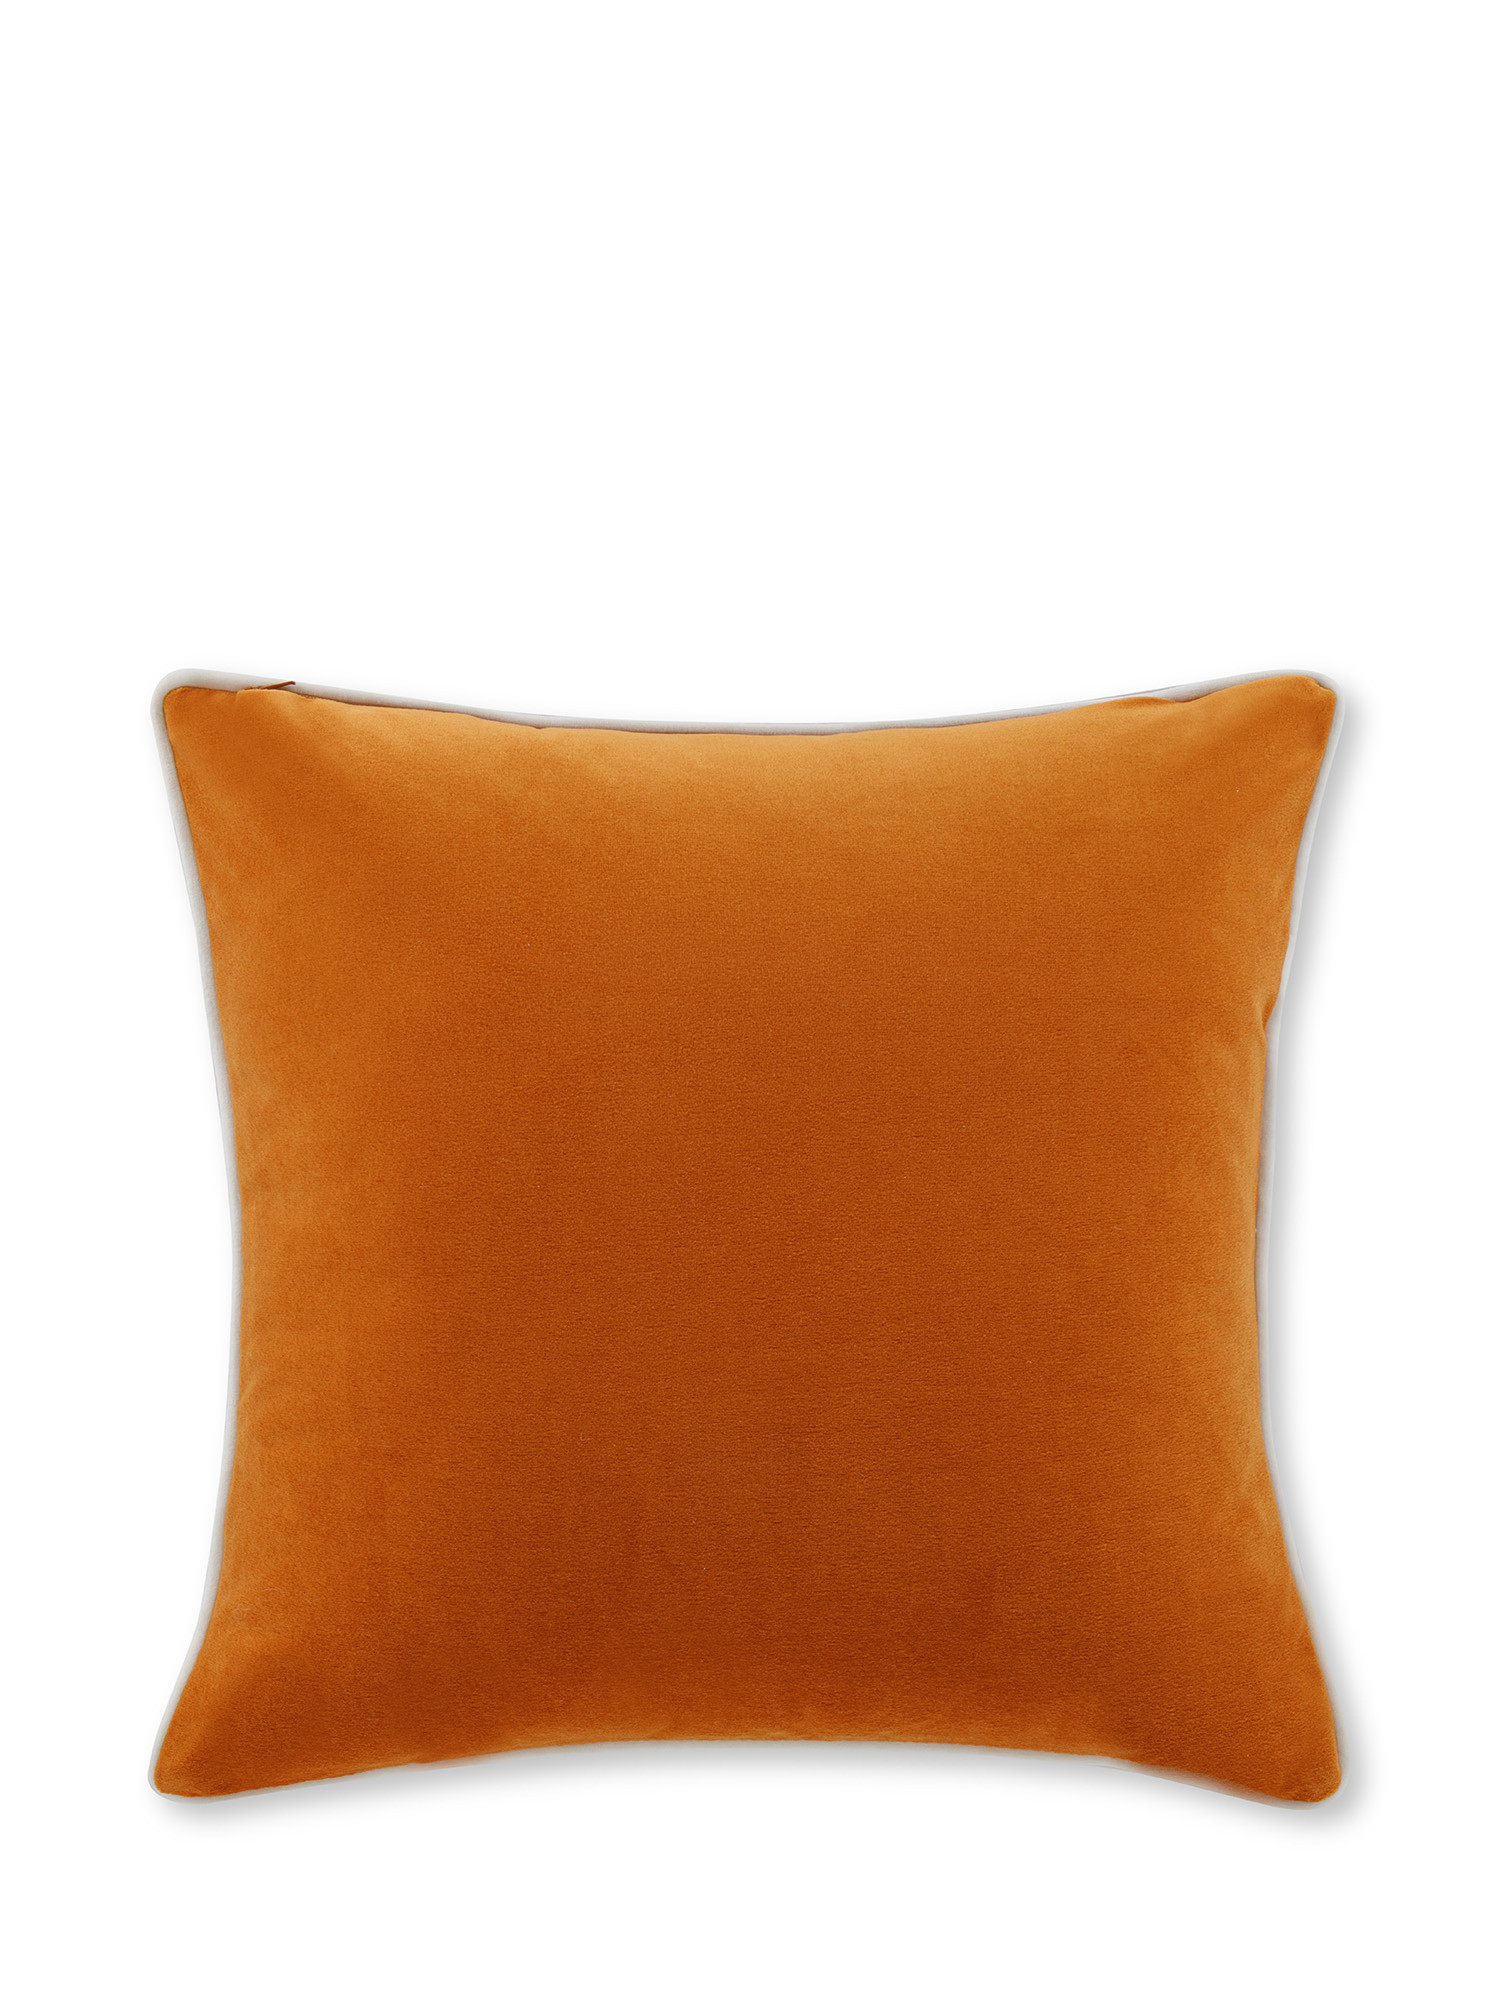 Cuscino in velluto con piping applicato sul bordo 45x45 cm, Arancione, large image number 1